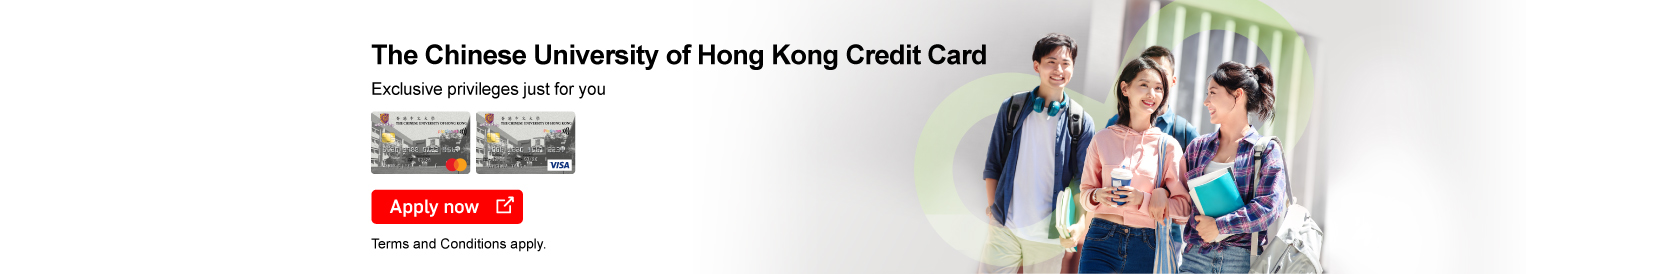 The Chinese University of Hong Kong Credit Card